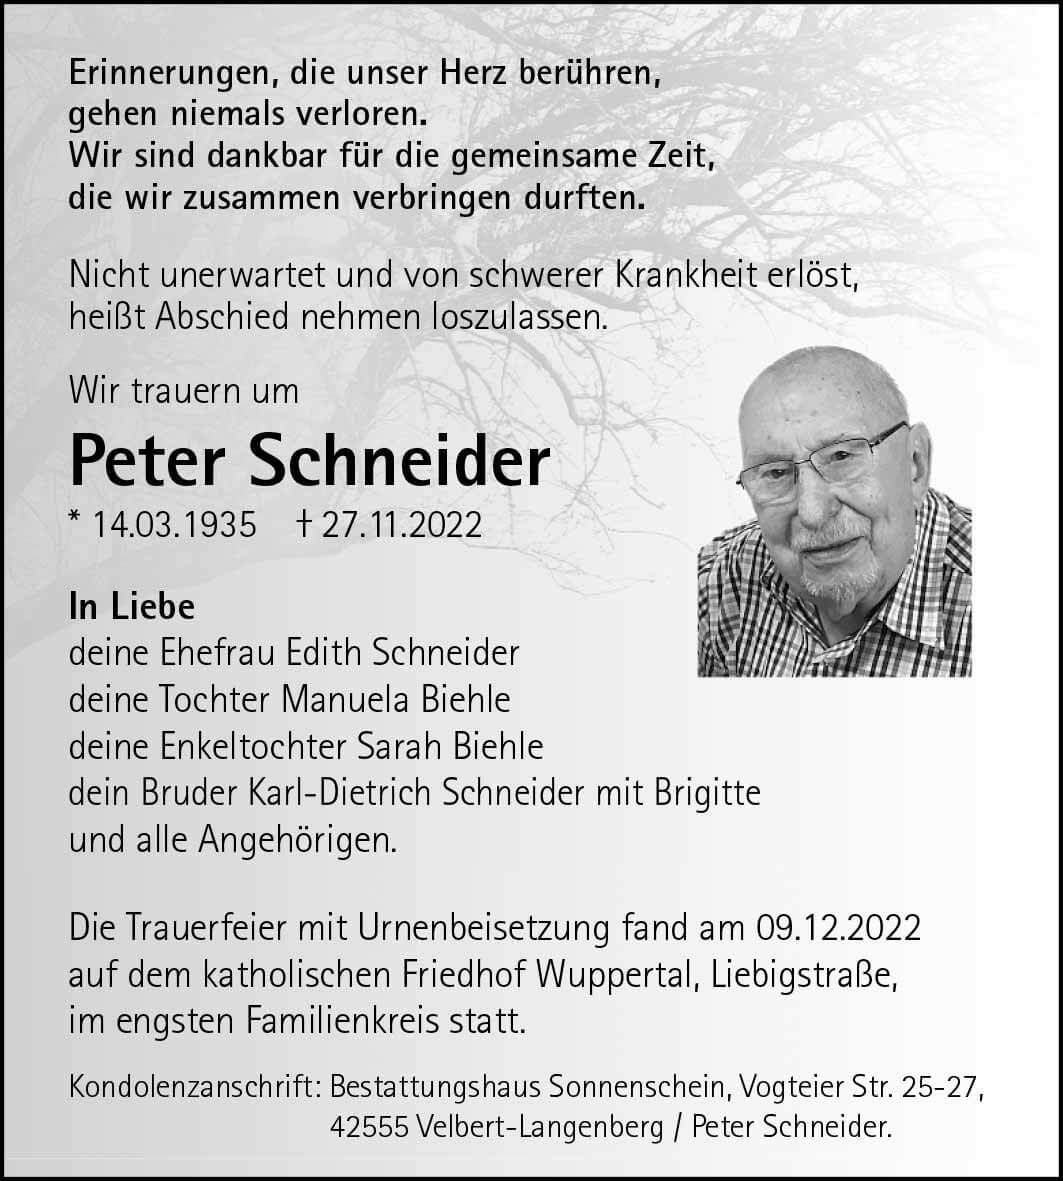 Peter Schneider † 27. 11. 2022